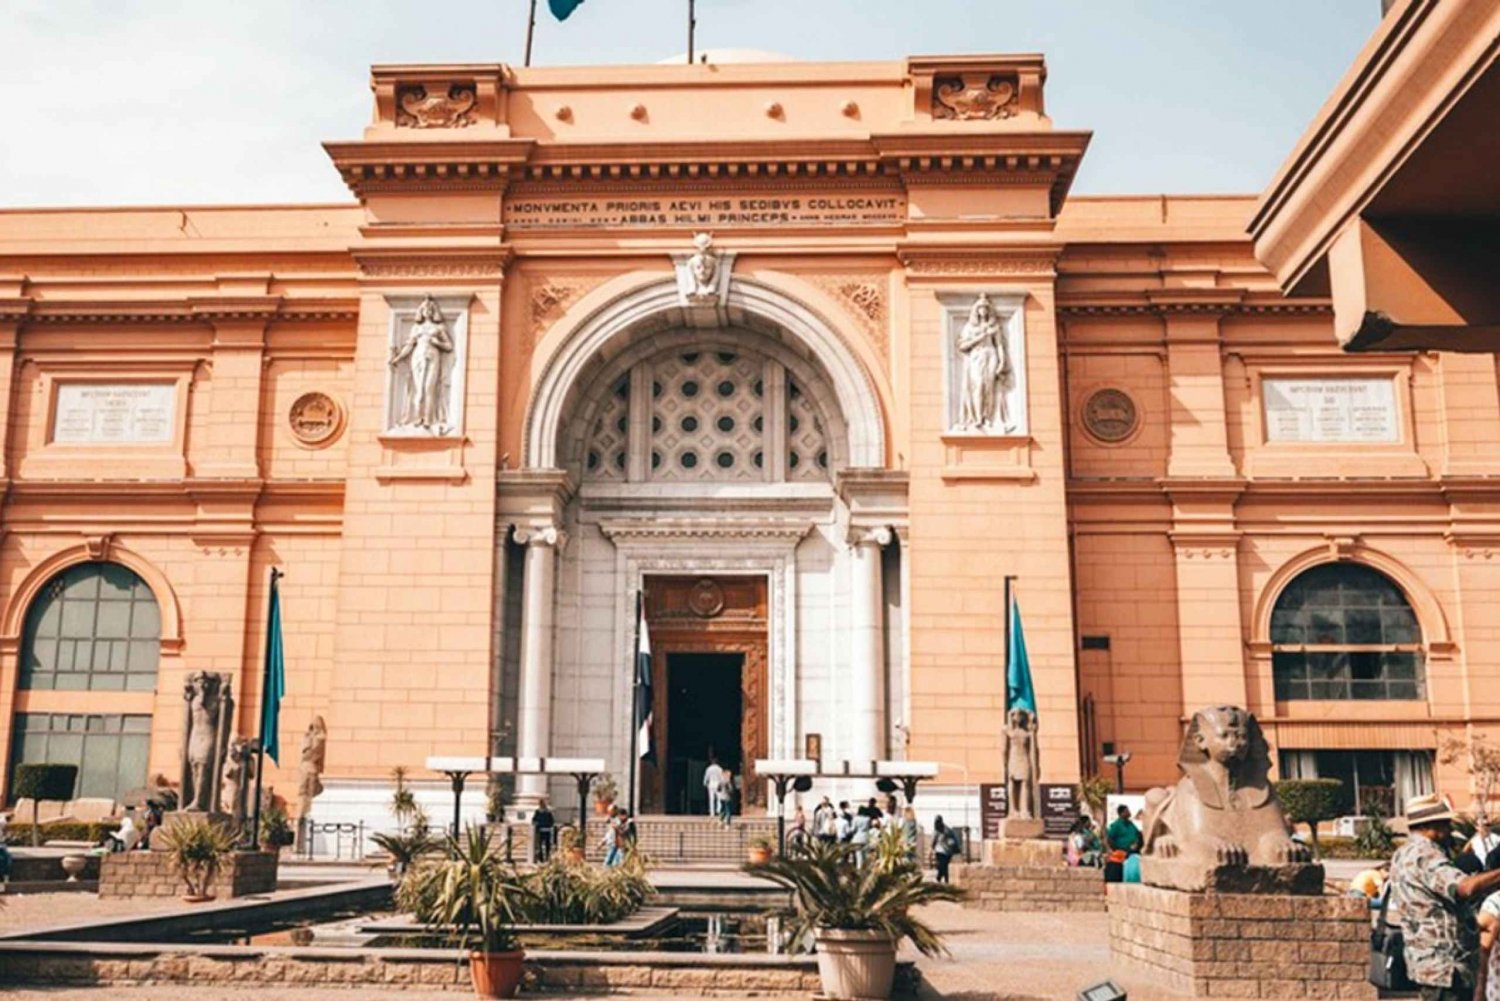 Cairo:Tour to Museum, Citadel, Coptic Cairo & Dinner Cruise